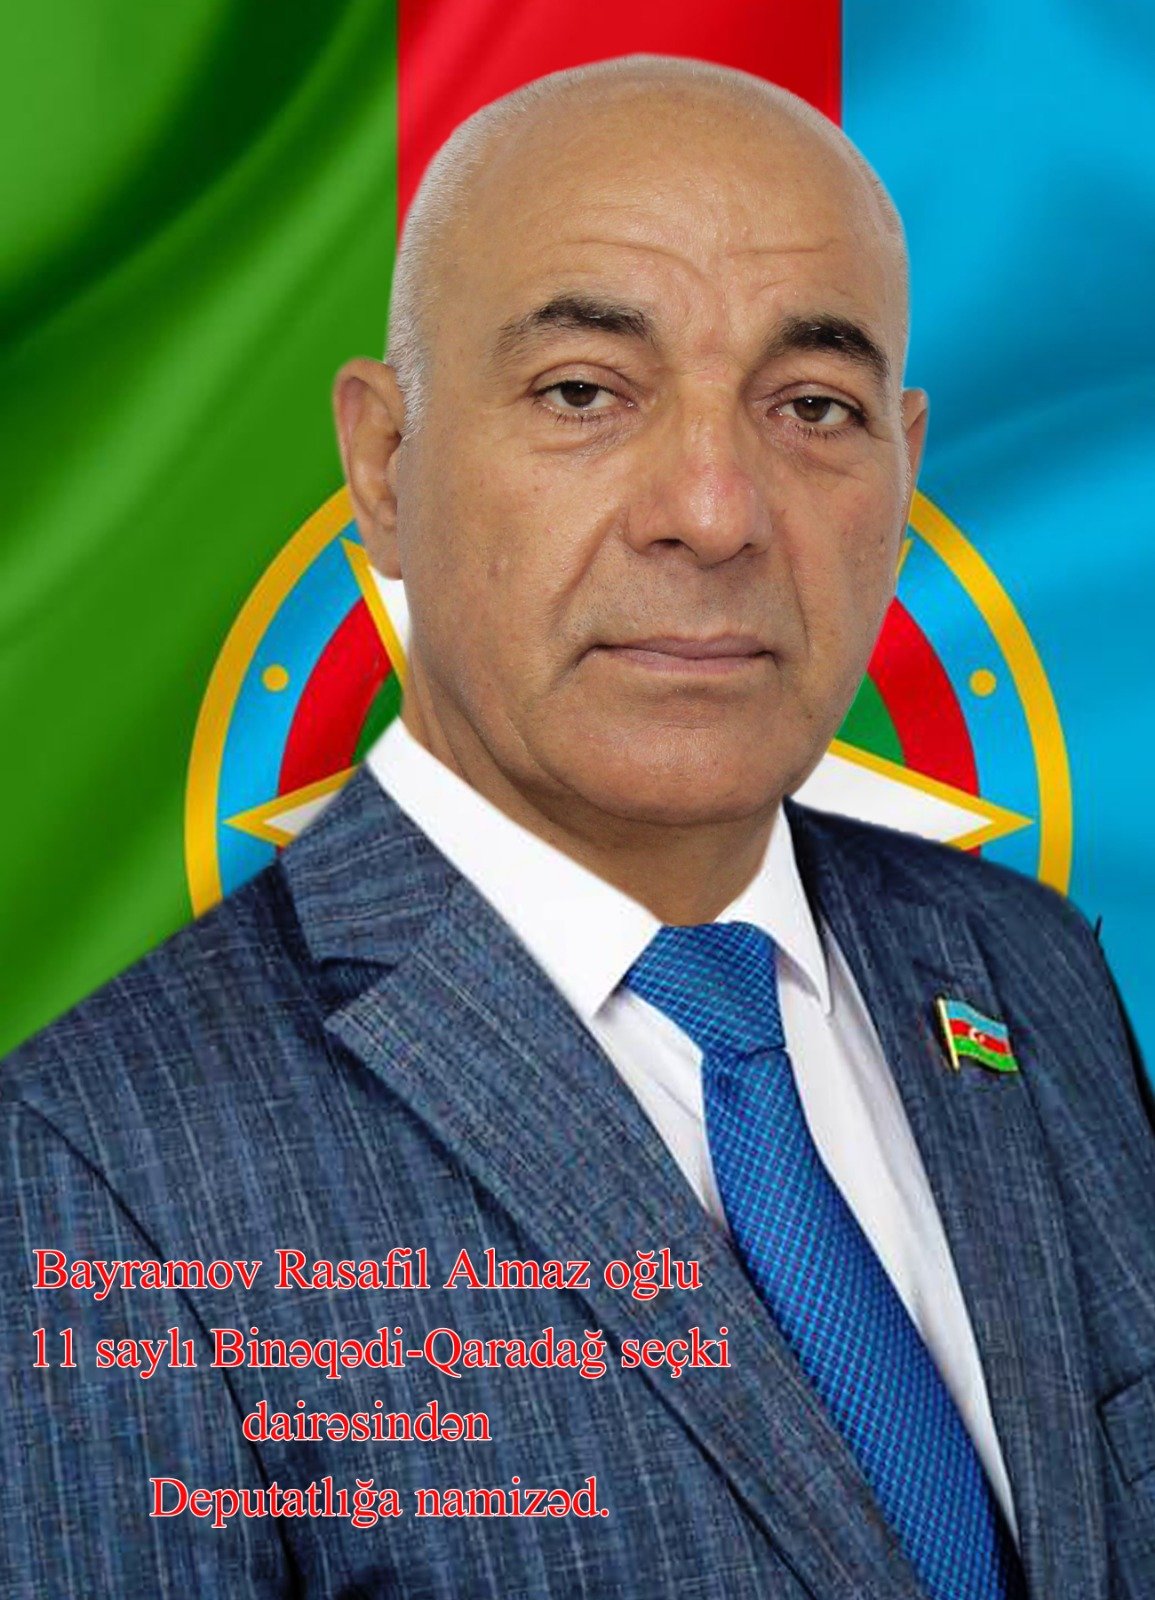 Bayramov Rasafil Almaz oğlu